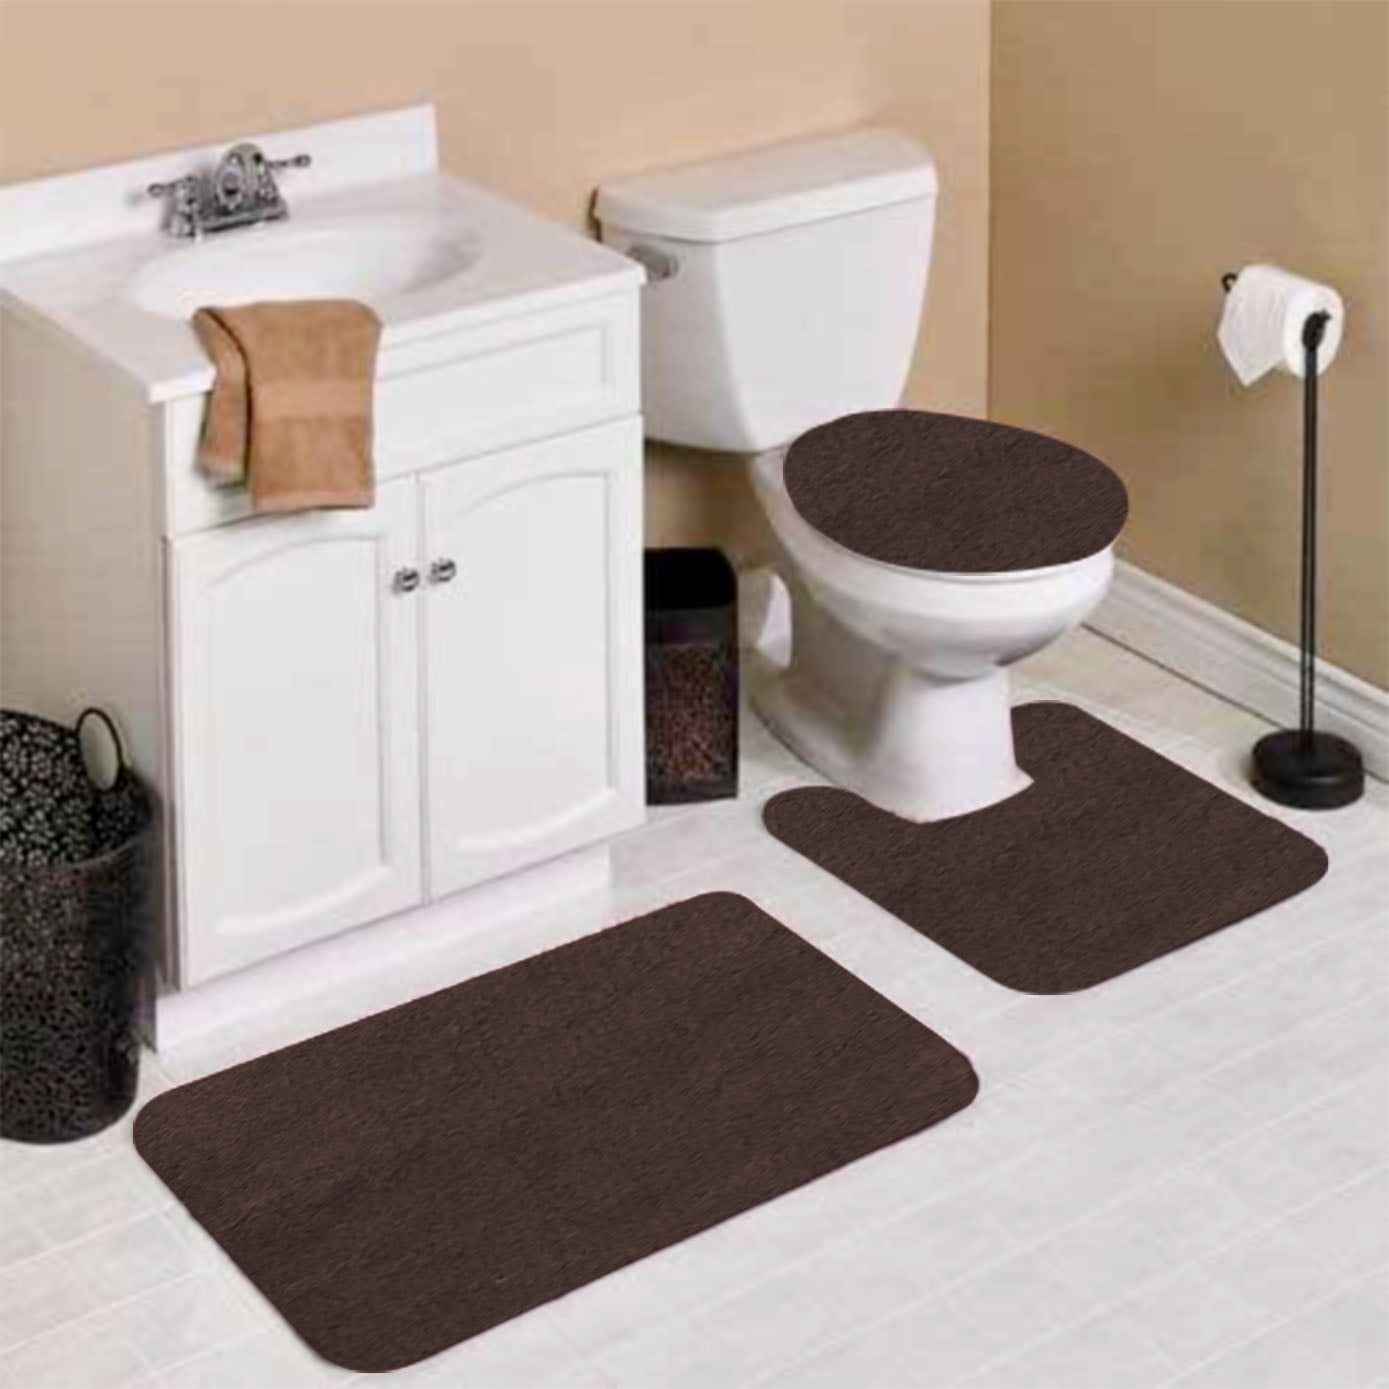 Details about   3pcs Bathroom Bathmats Set Anti-slip Plain Bath Mat Contour Rug Toilet Lid Cover 